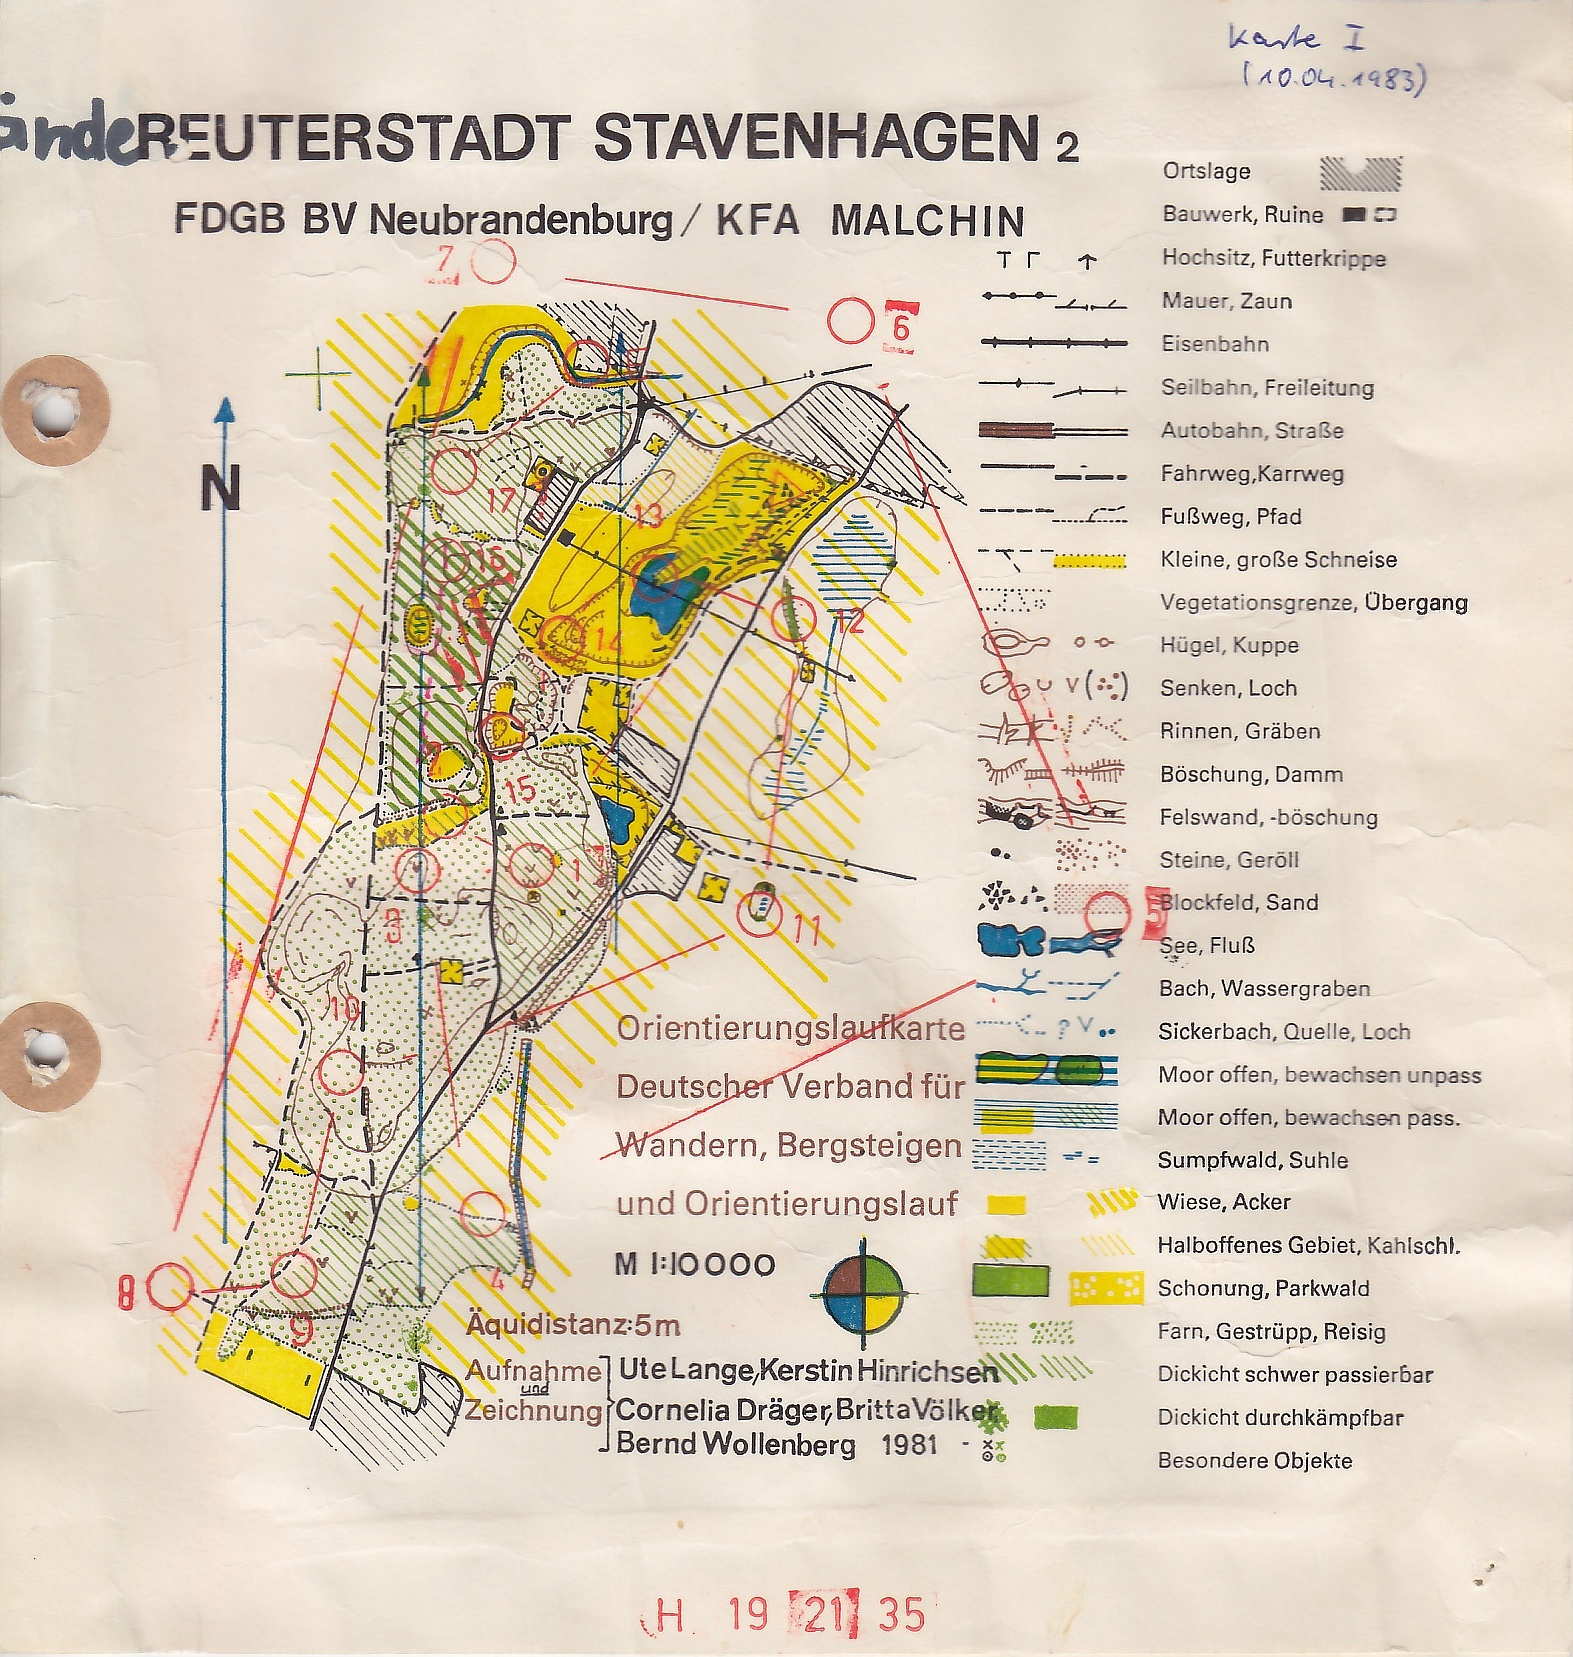 Stavenhagen (1983-04-10)